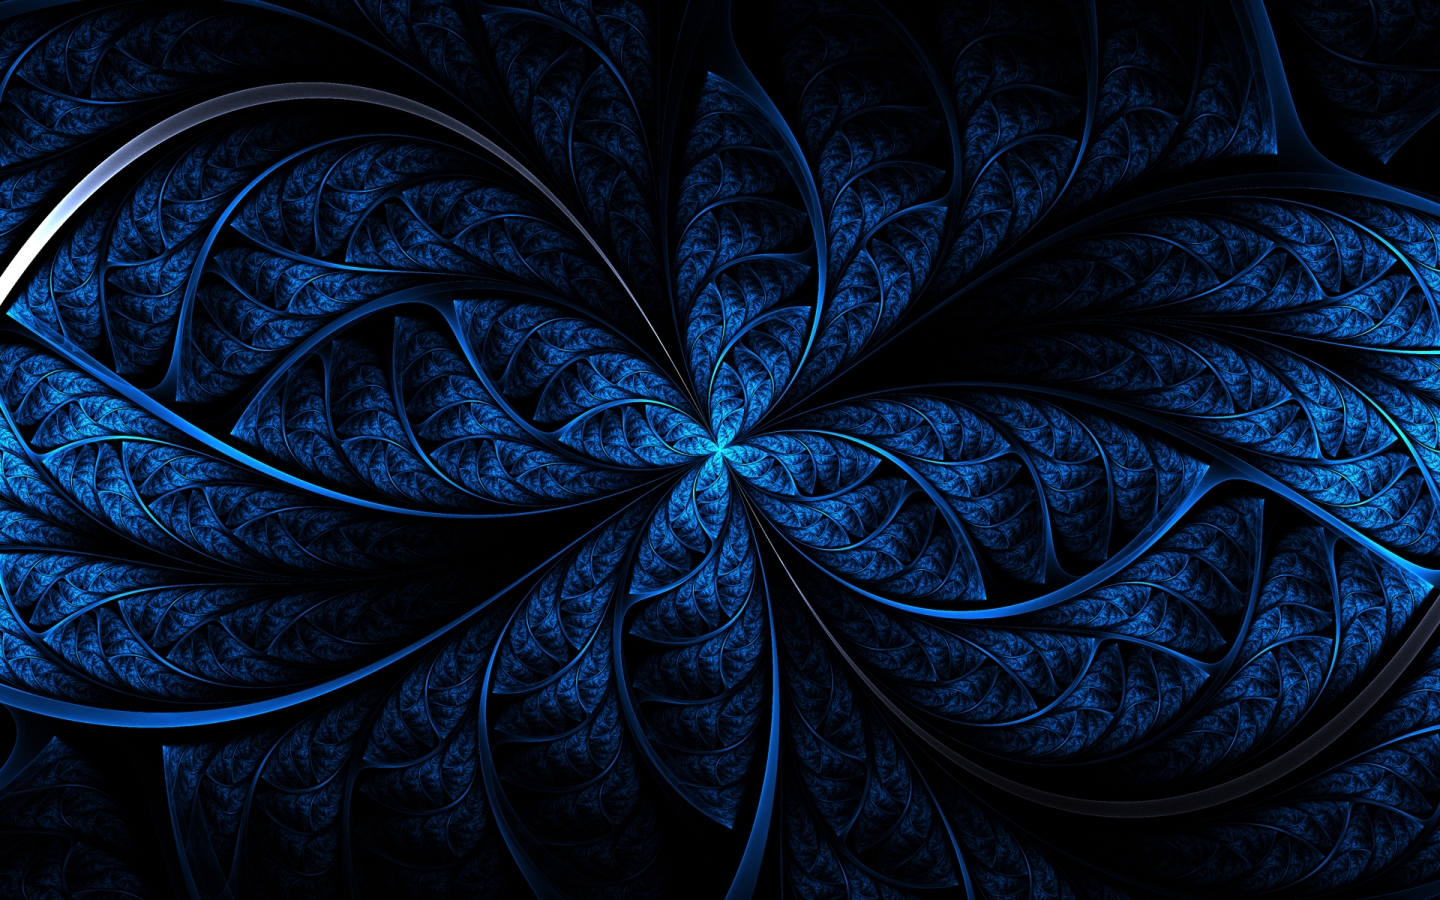 Blue Art for 1440 x 900 widescreen resolution